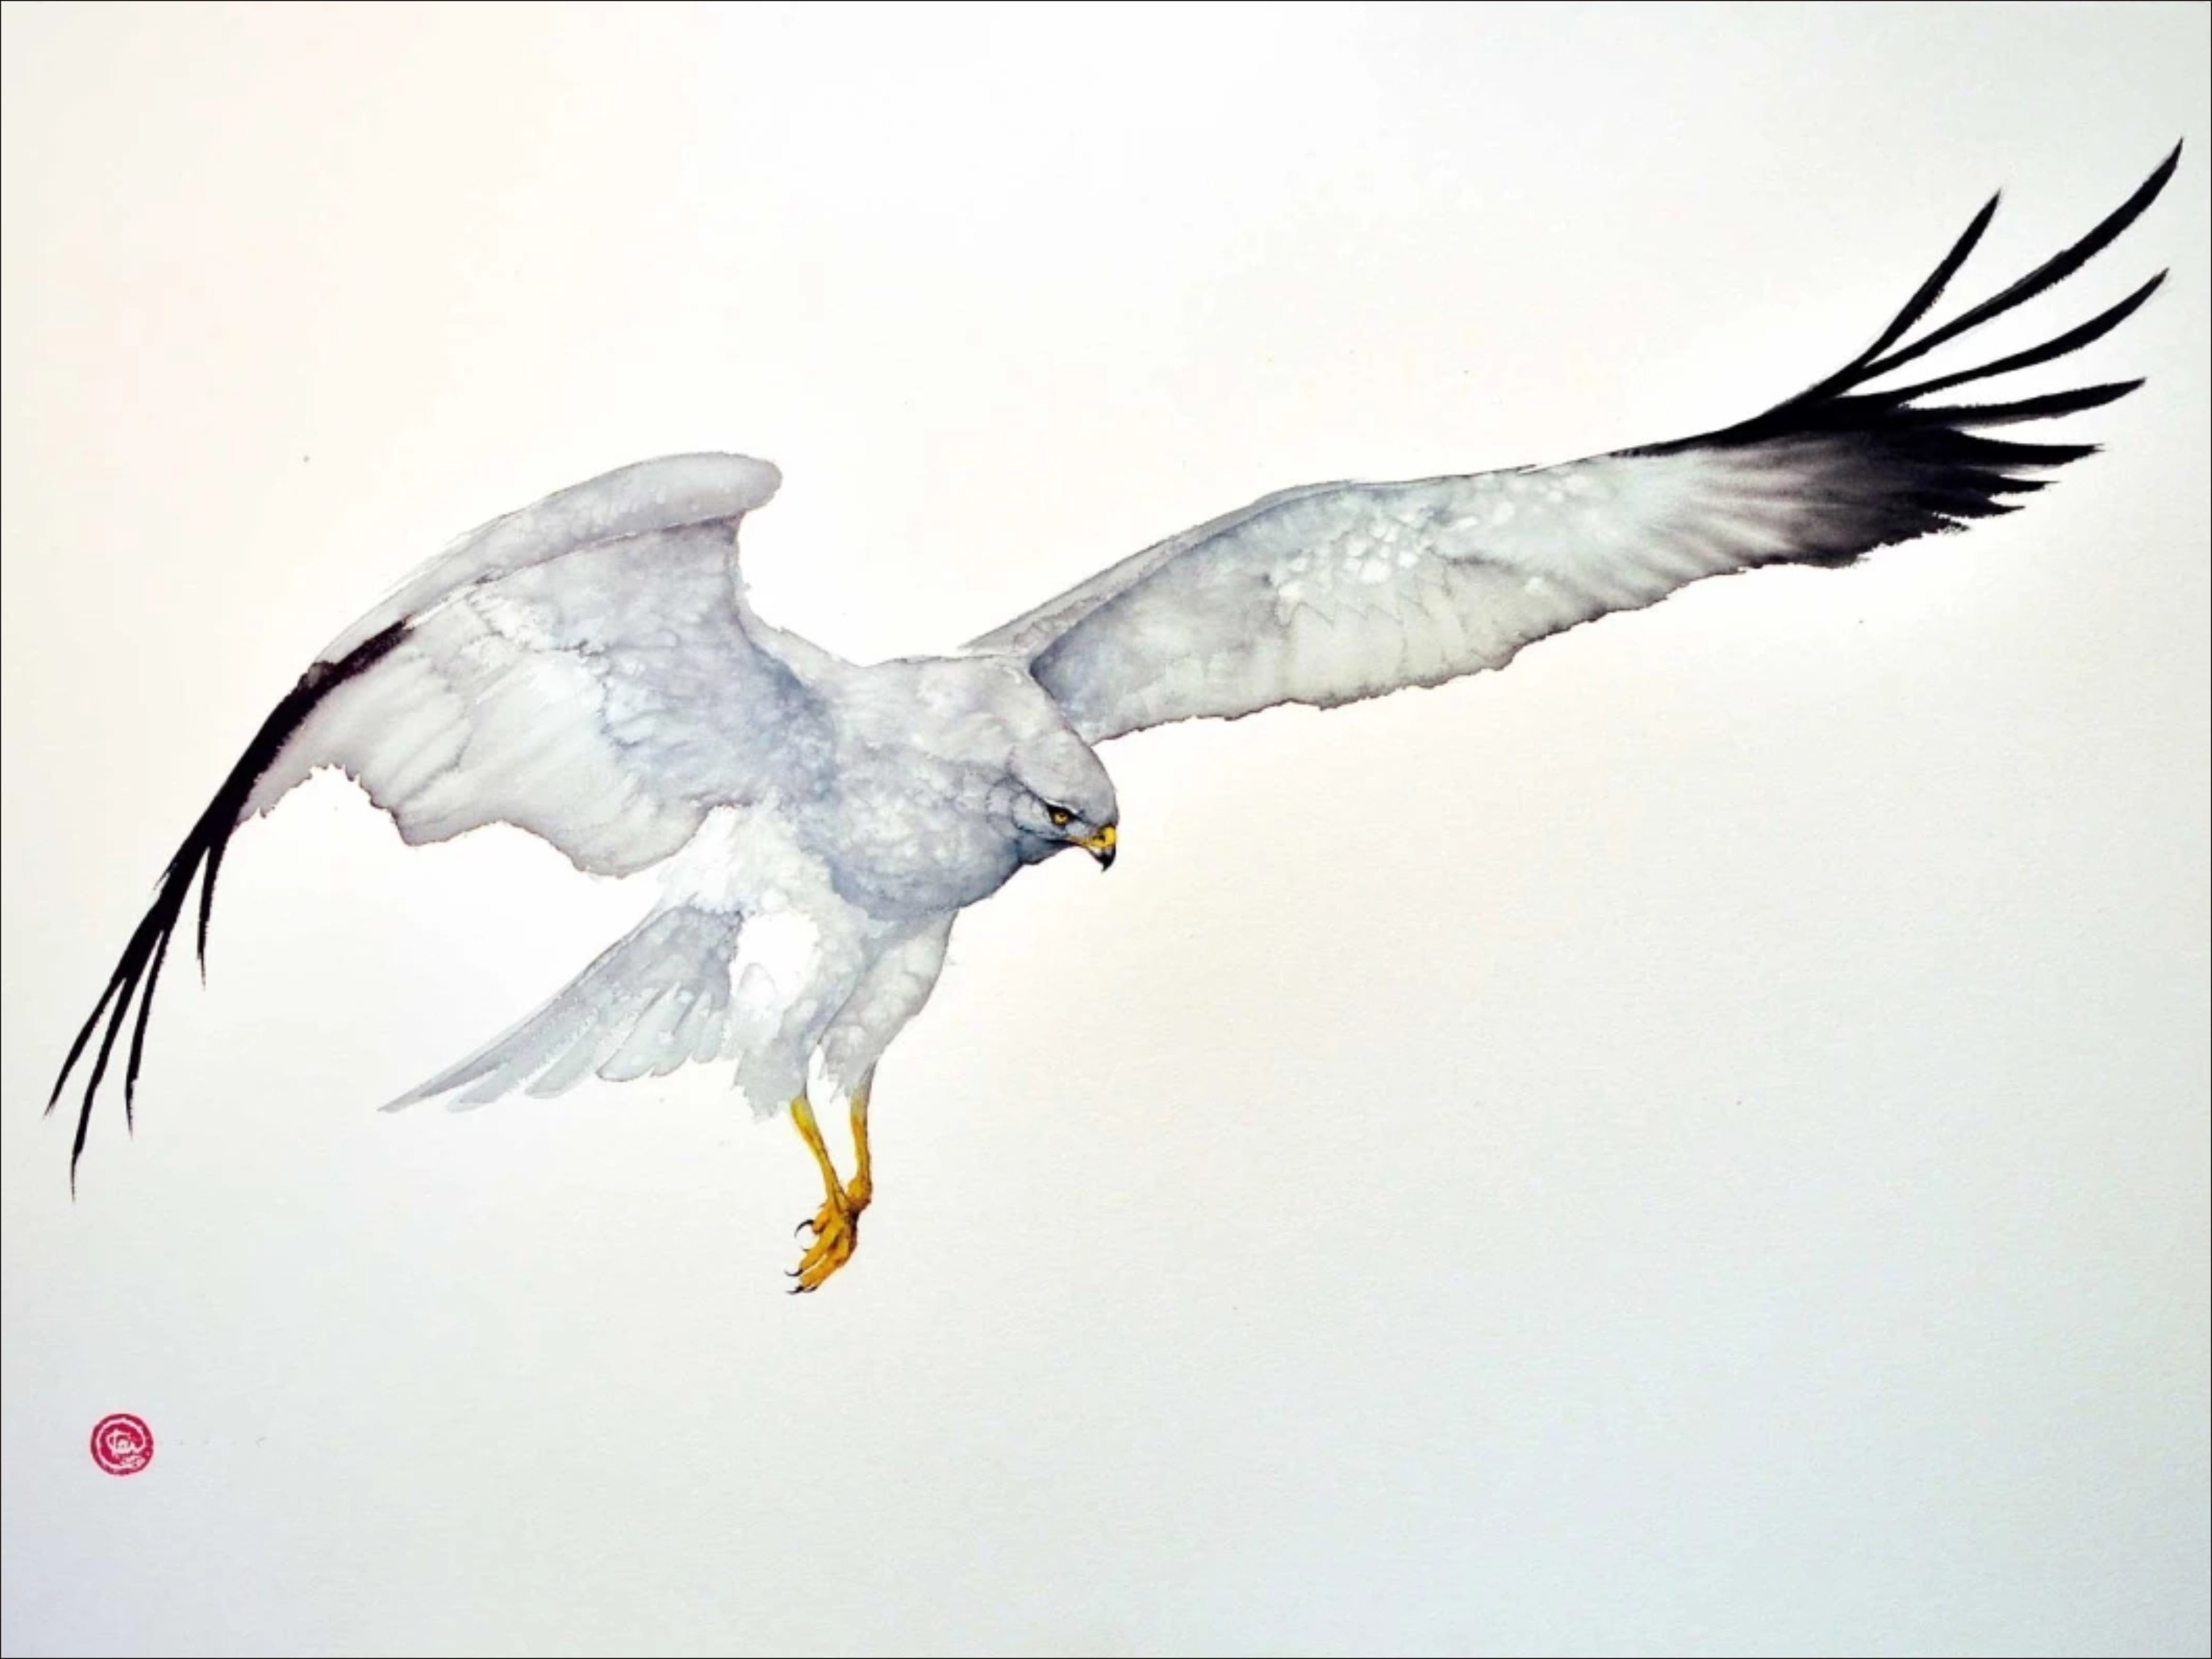 壁纸1024×768翱翔蓝天 飞翔的鸟图片 Computer Desktop of Flying Birds壁纸,翱翔蓝天-飞翔的鸟壁纸壁纸图片-动物壁纸-动物图片素材-桌面壁纸